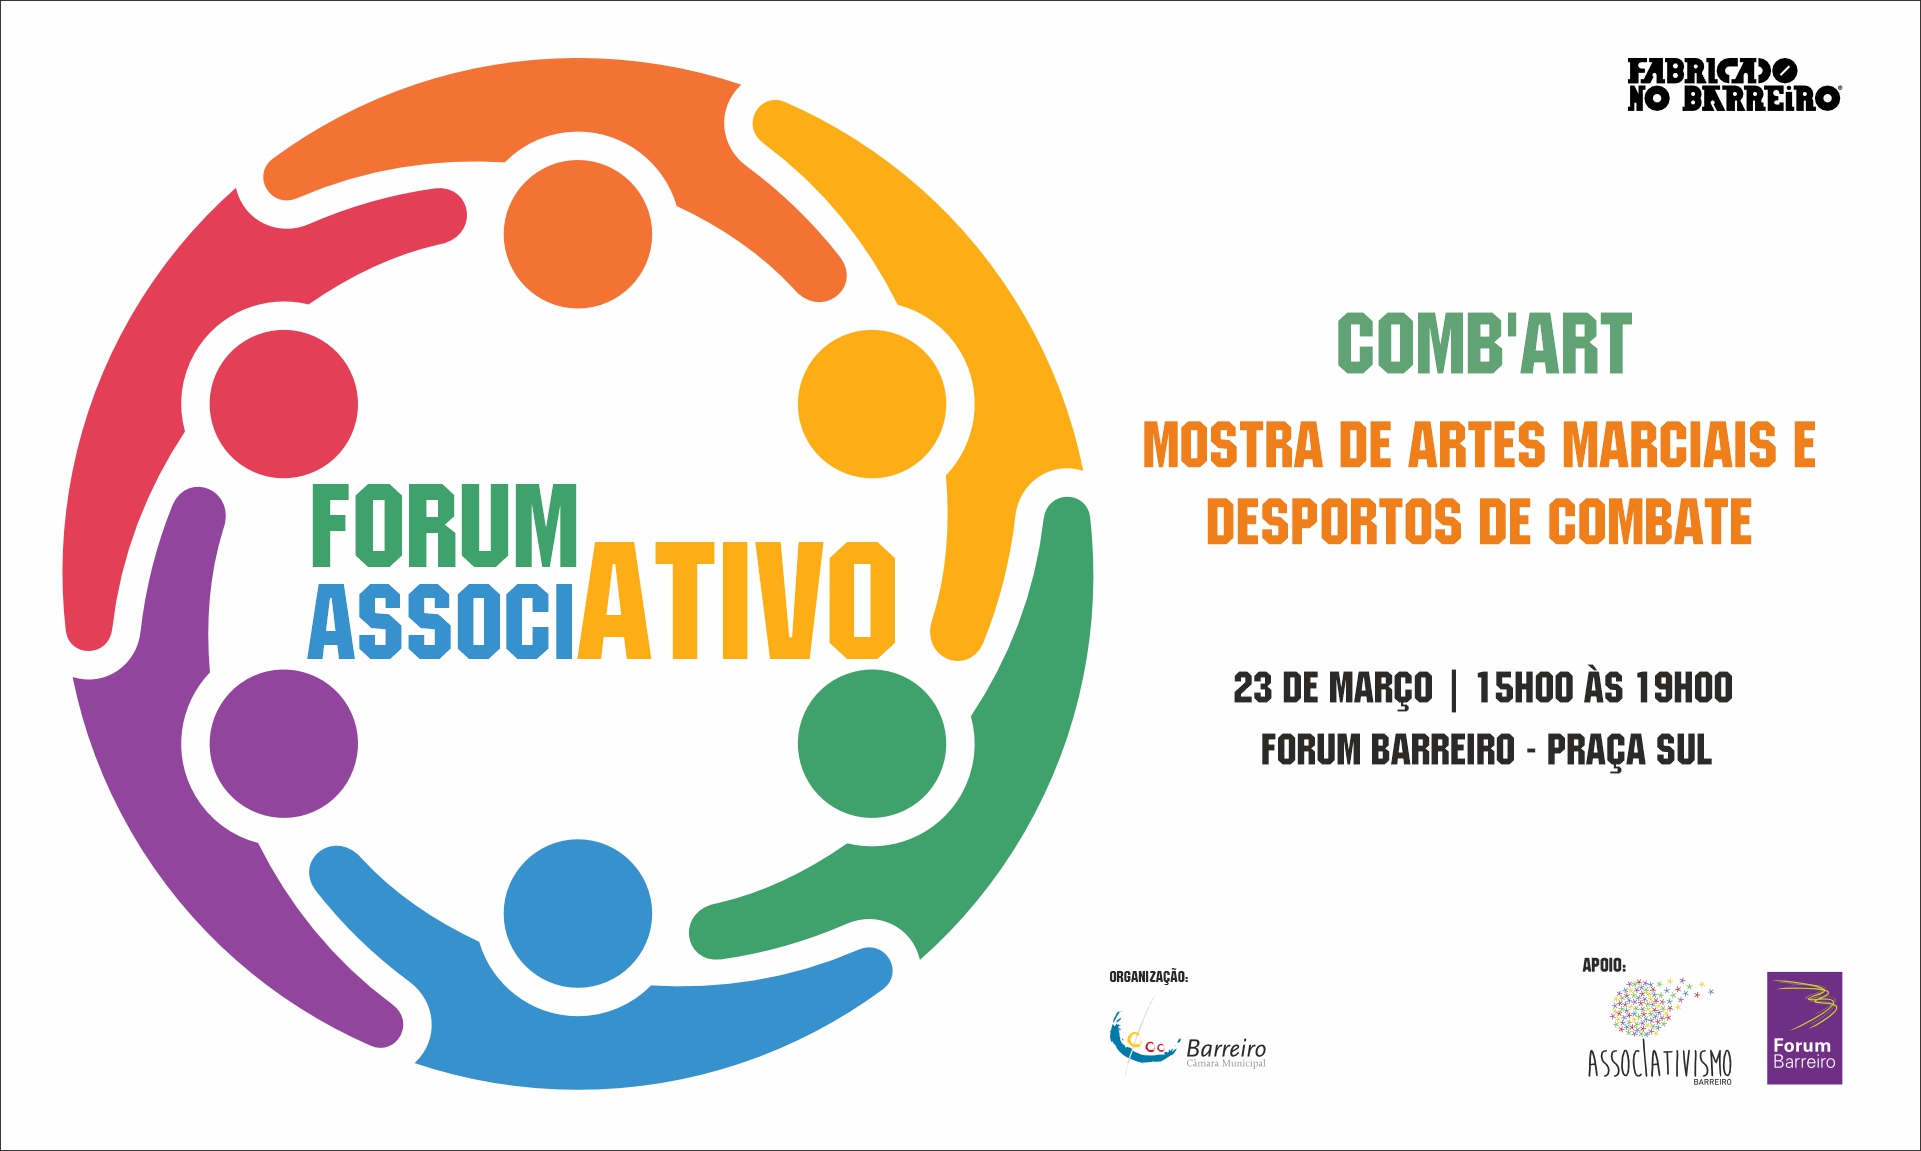 Comb’Art | Forum AssociAtivo | 23 março | 15h às 19h | Forum Barreiro – Praça Sul